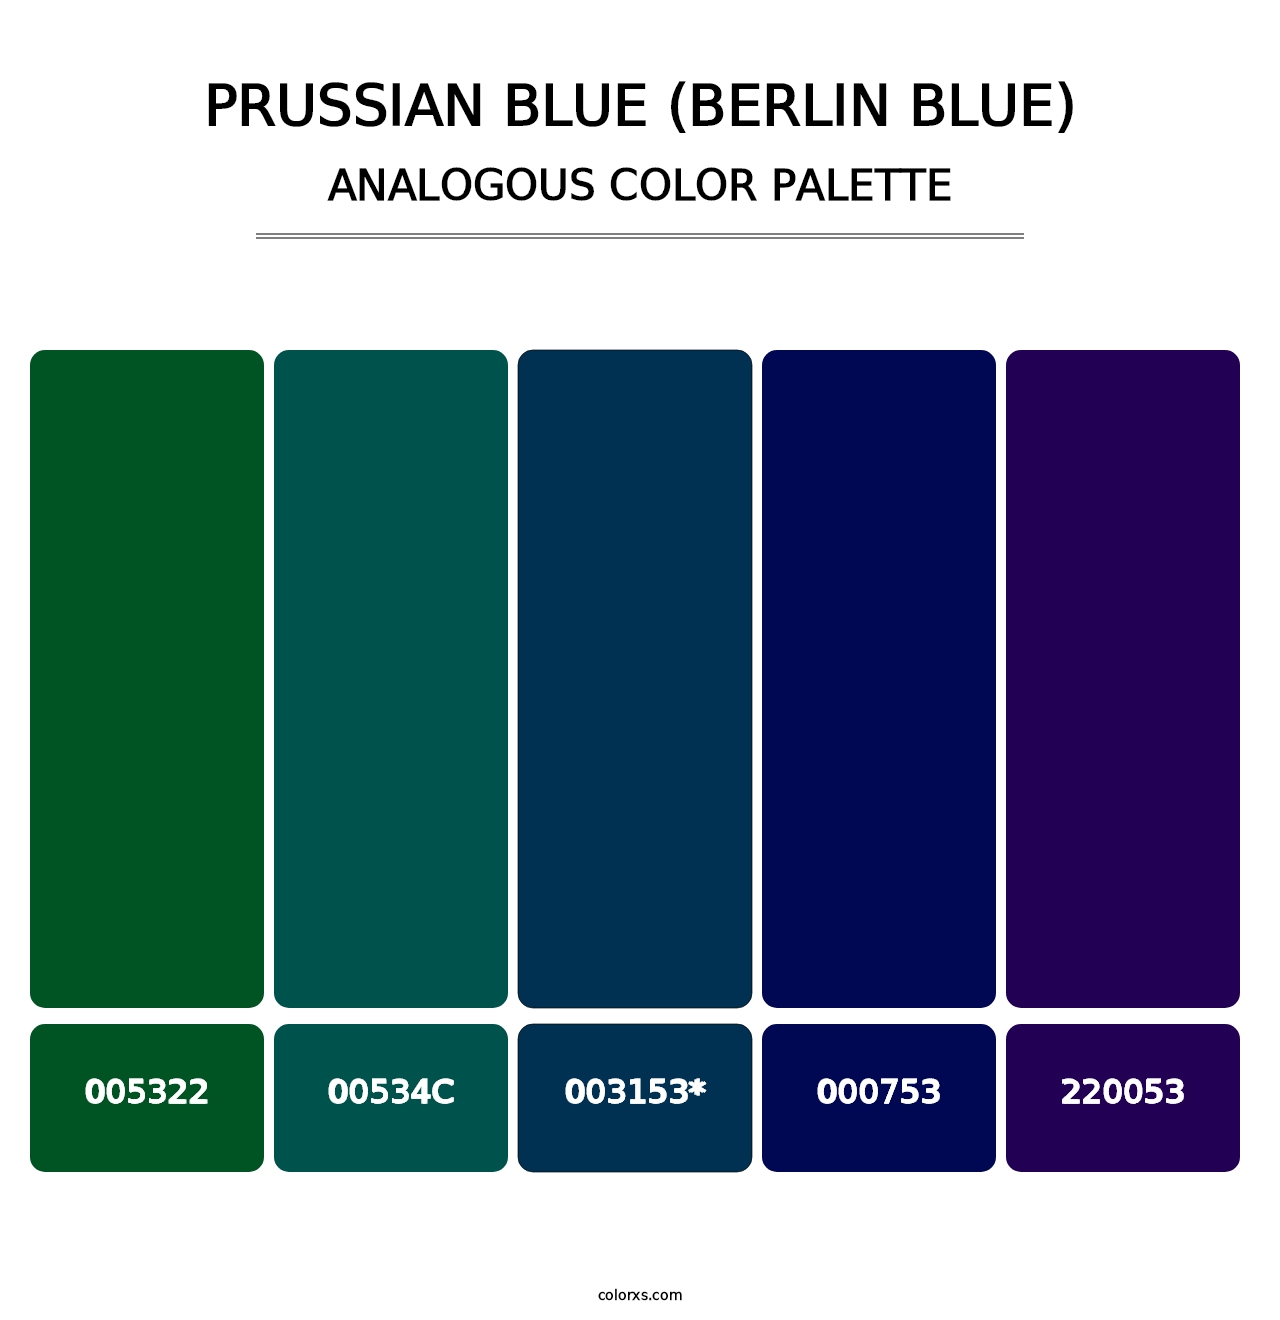 Prussian Blue (Berlin Blue) - Analogous Color Palette